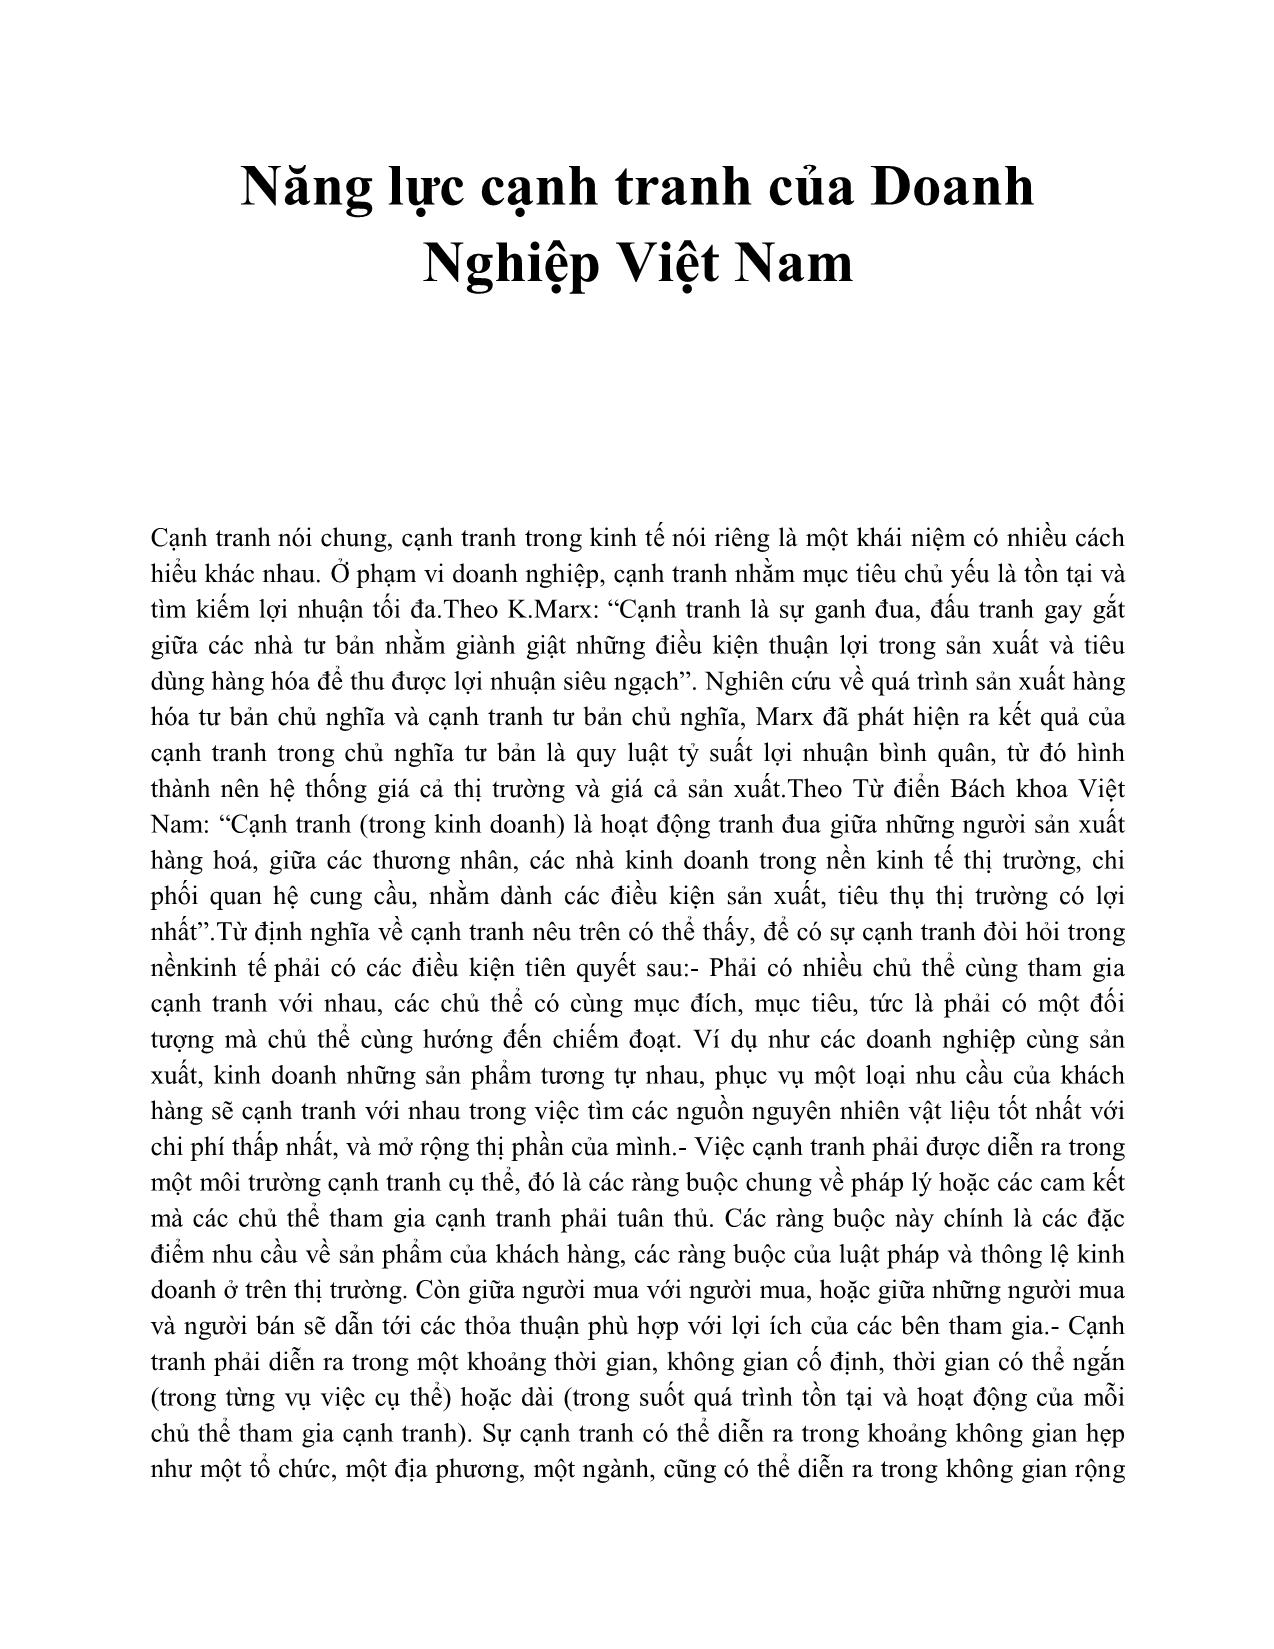 Năng lực cạnh tranh của doanh nghiệp Việt Nam trang 1